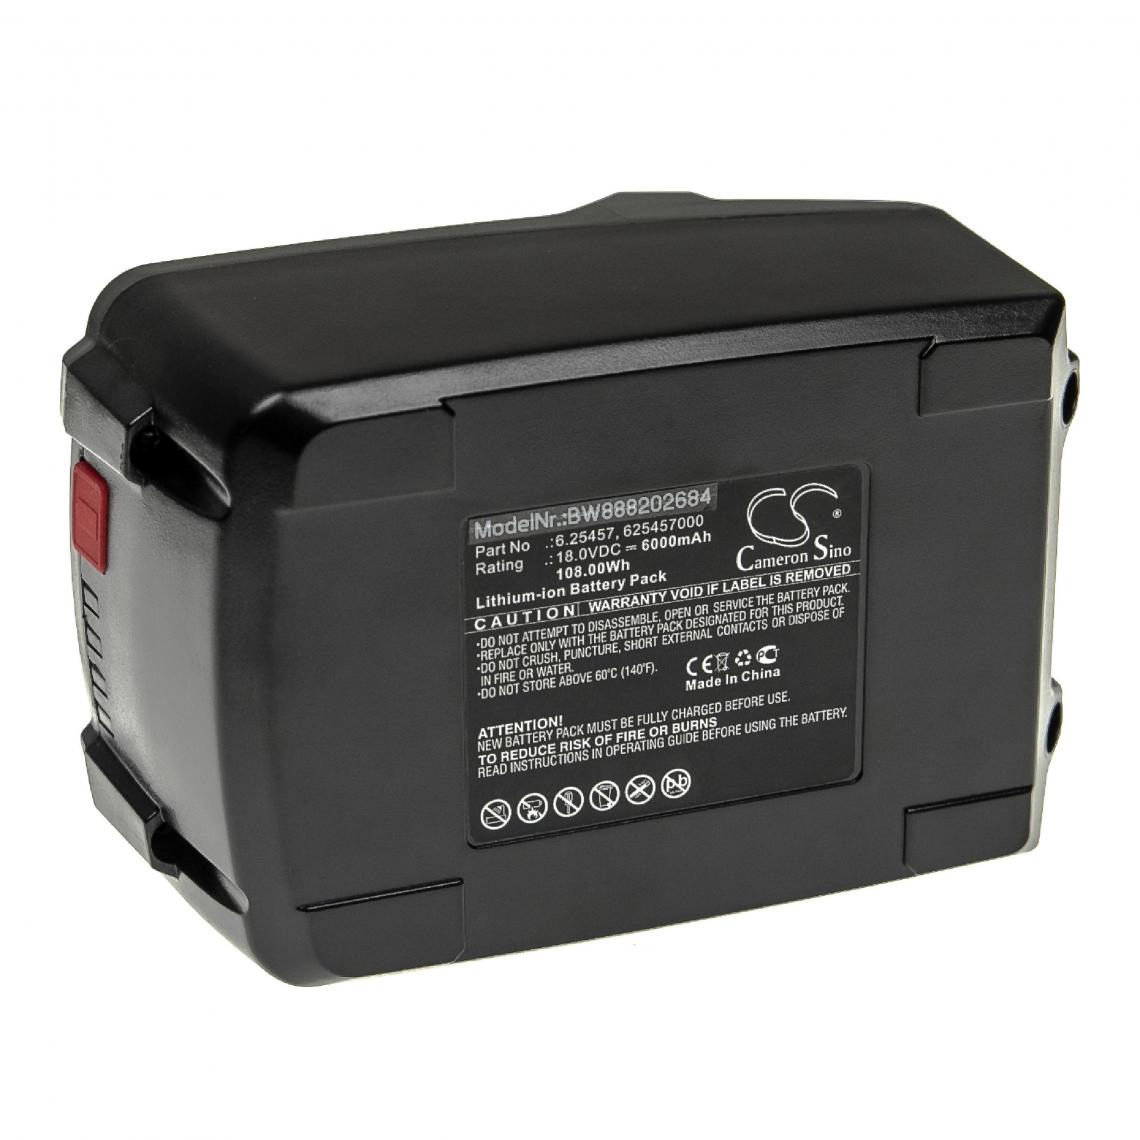 Vhbw - vhbw Batterie compatible avec Metabo BS 18 Quick, BS 18 Quick 602217500, BS 18 Quick 602217840 outil électrique (6000mAh Li-ion 18 V) - Autre appareil de mesure